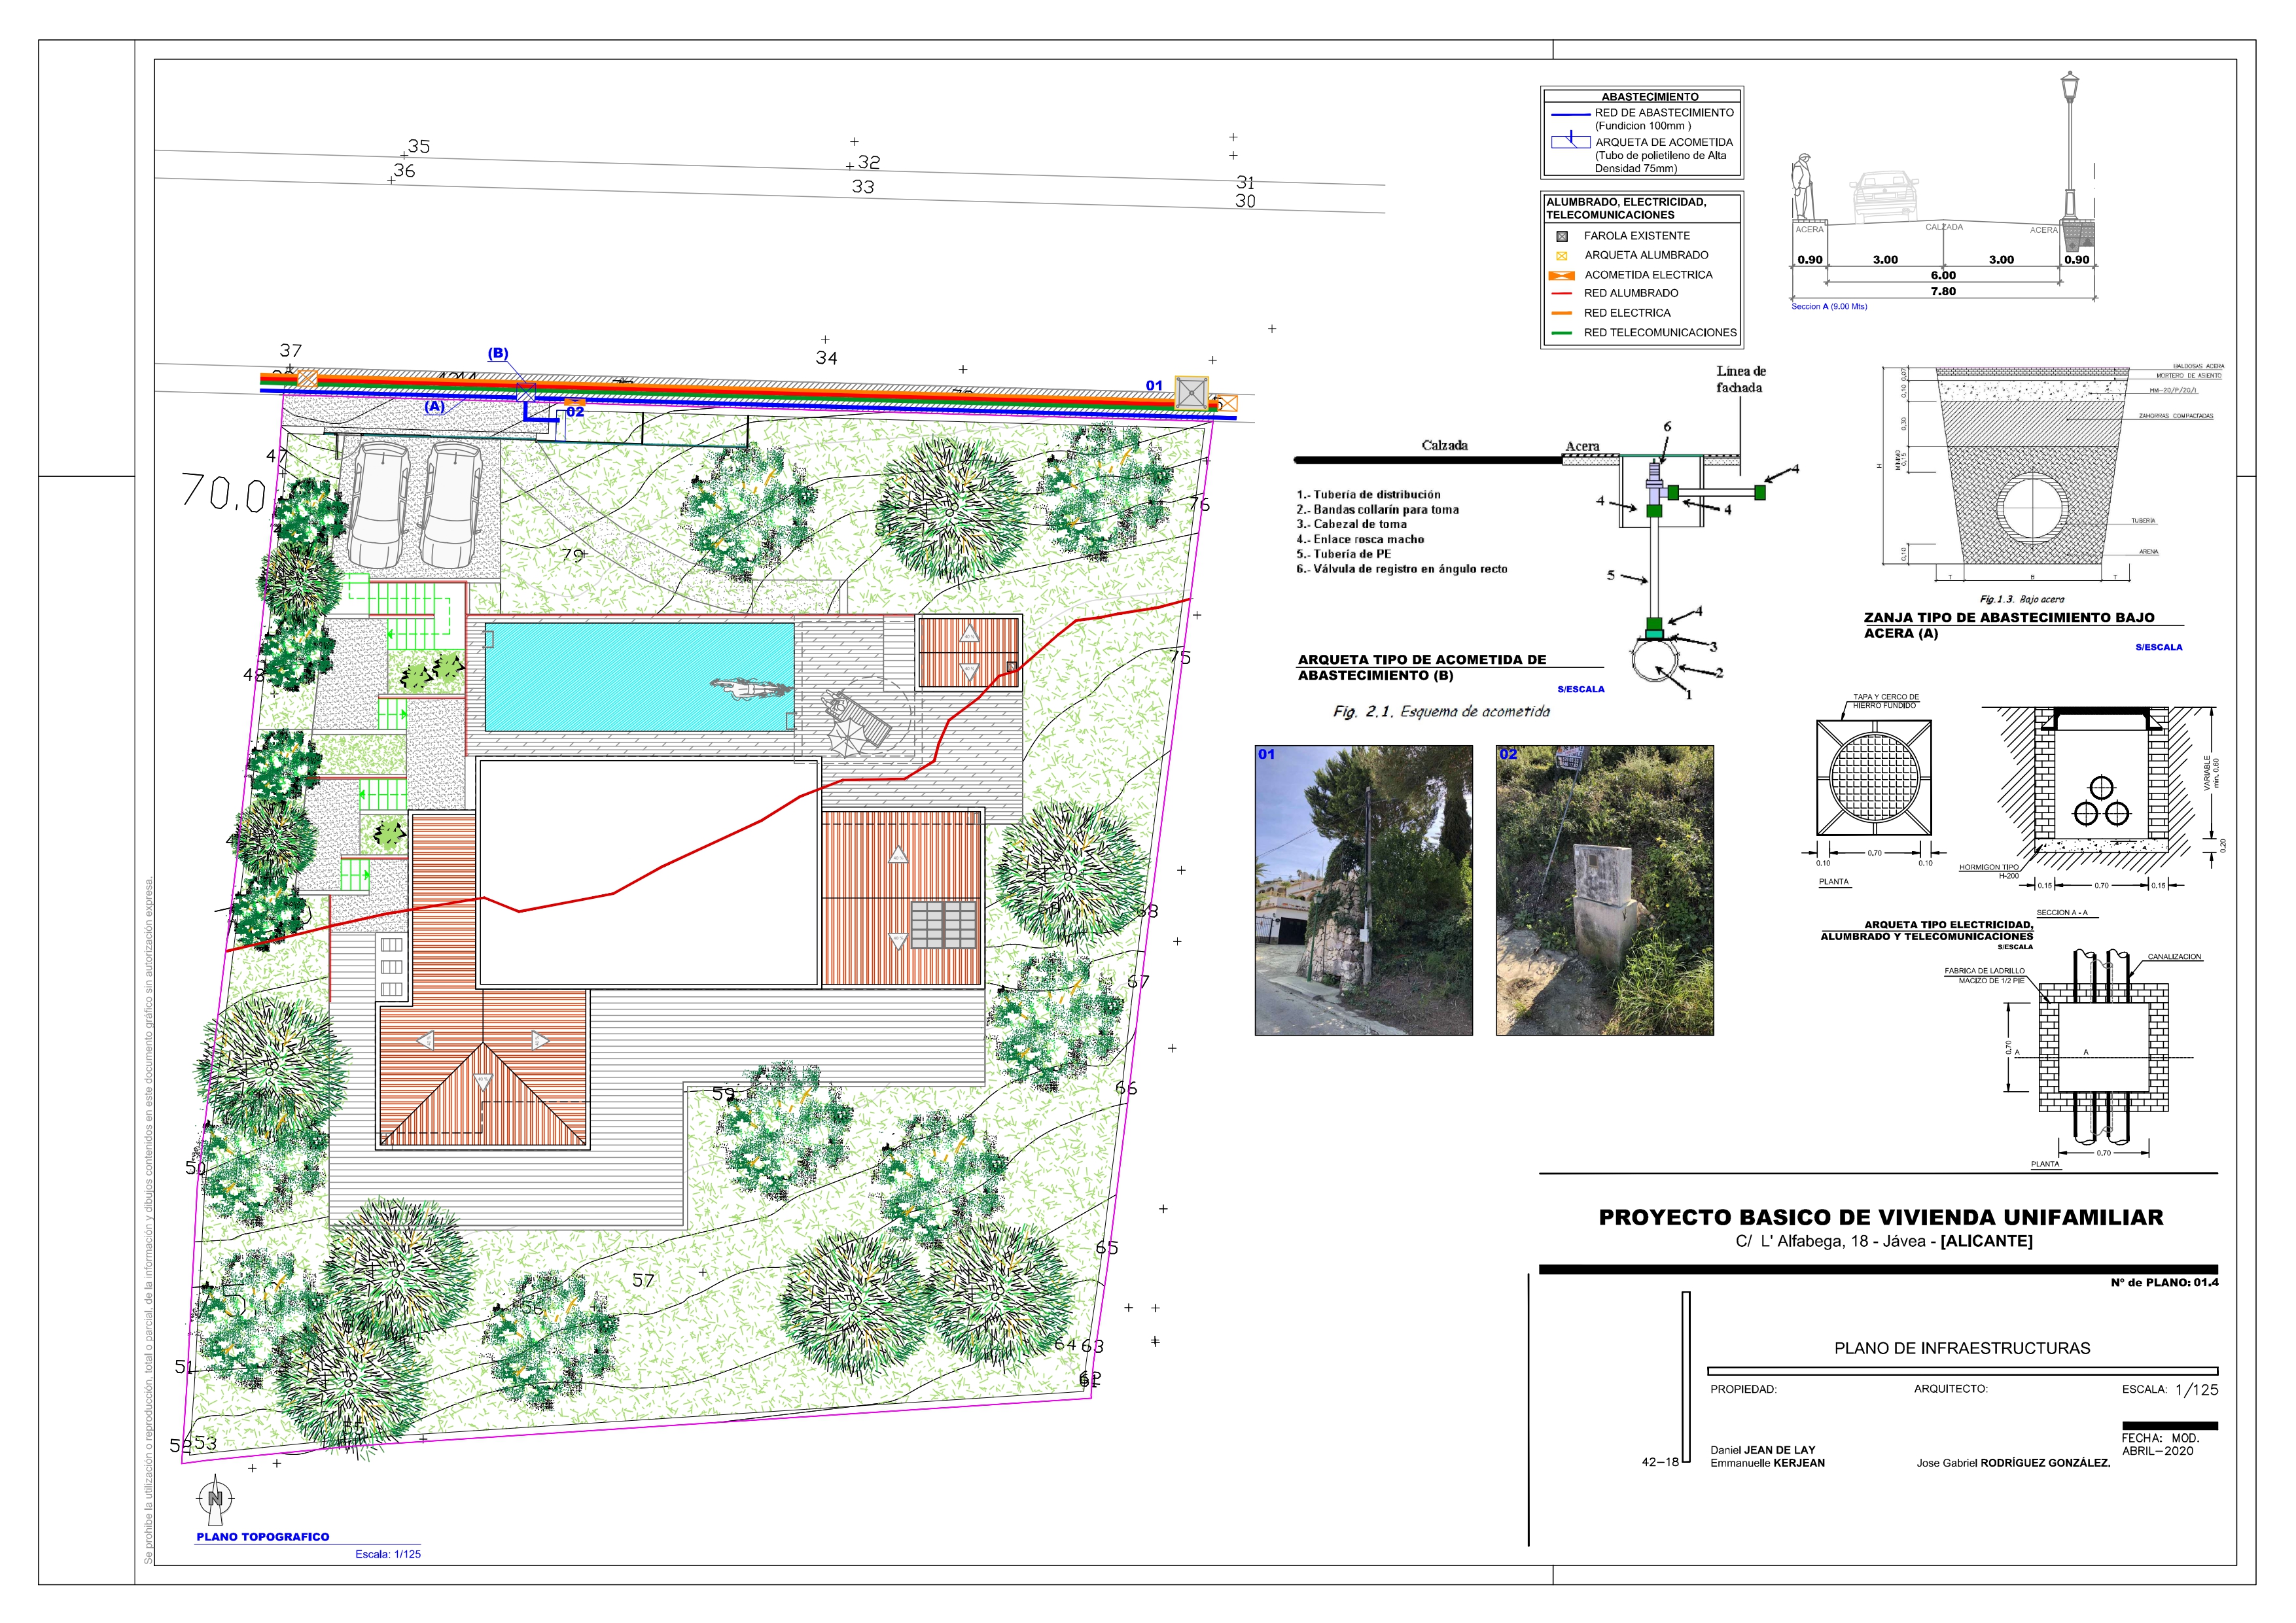 Grundstück mit Projekt - Baugenehmigung, Javea Tosalet Phase III